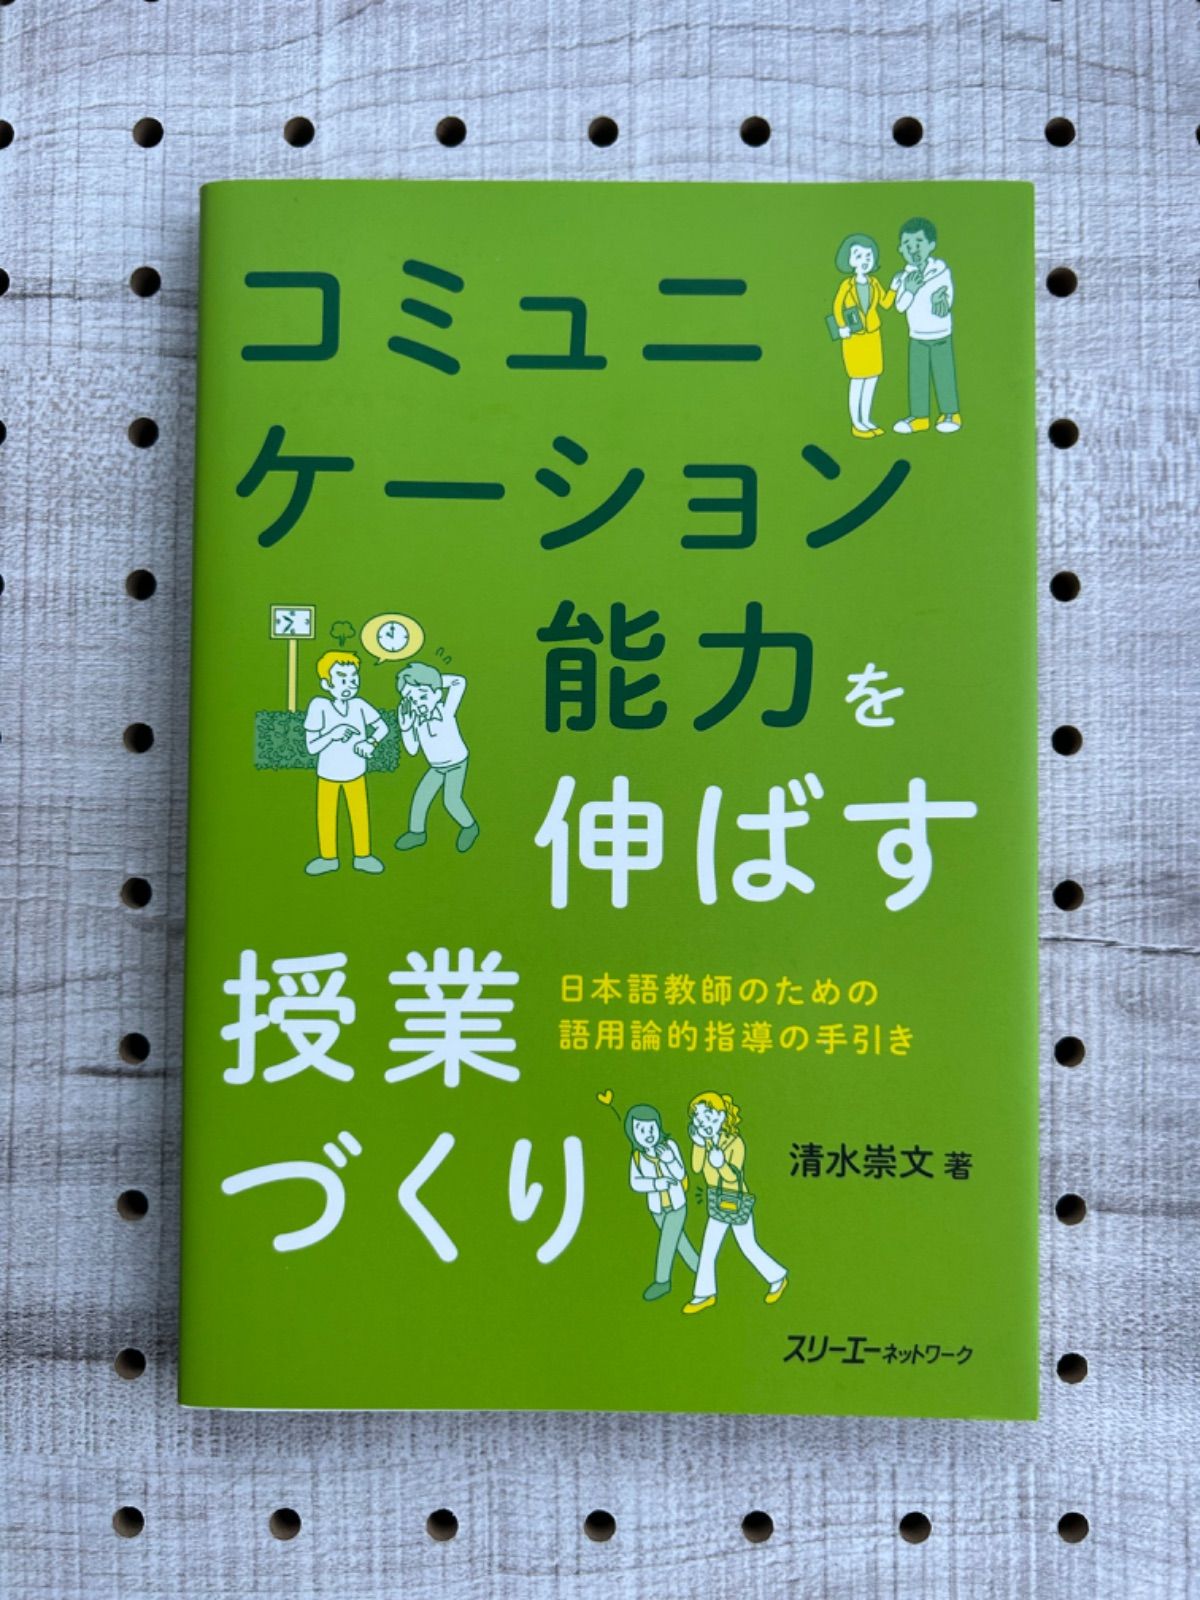 コミュニケーション能力を伸ばす授業づくり 日本語教師のための語用論的指導の手引き - メルカリ